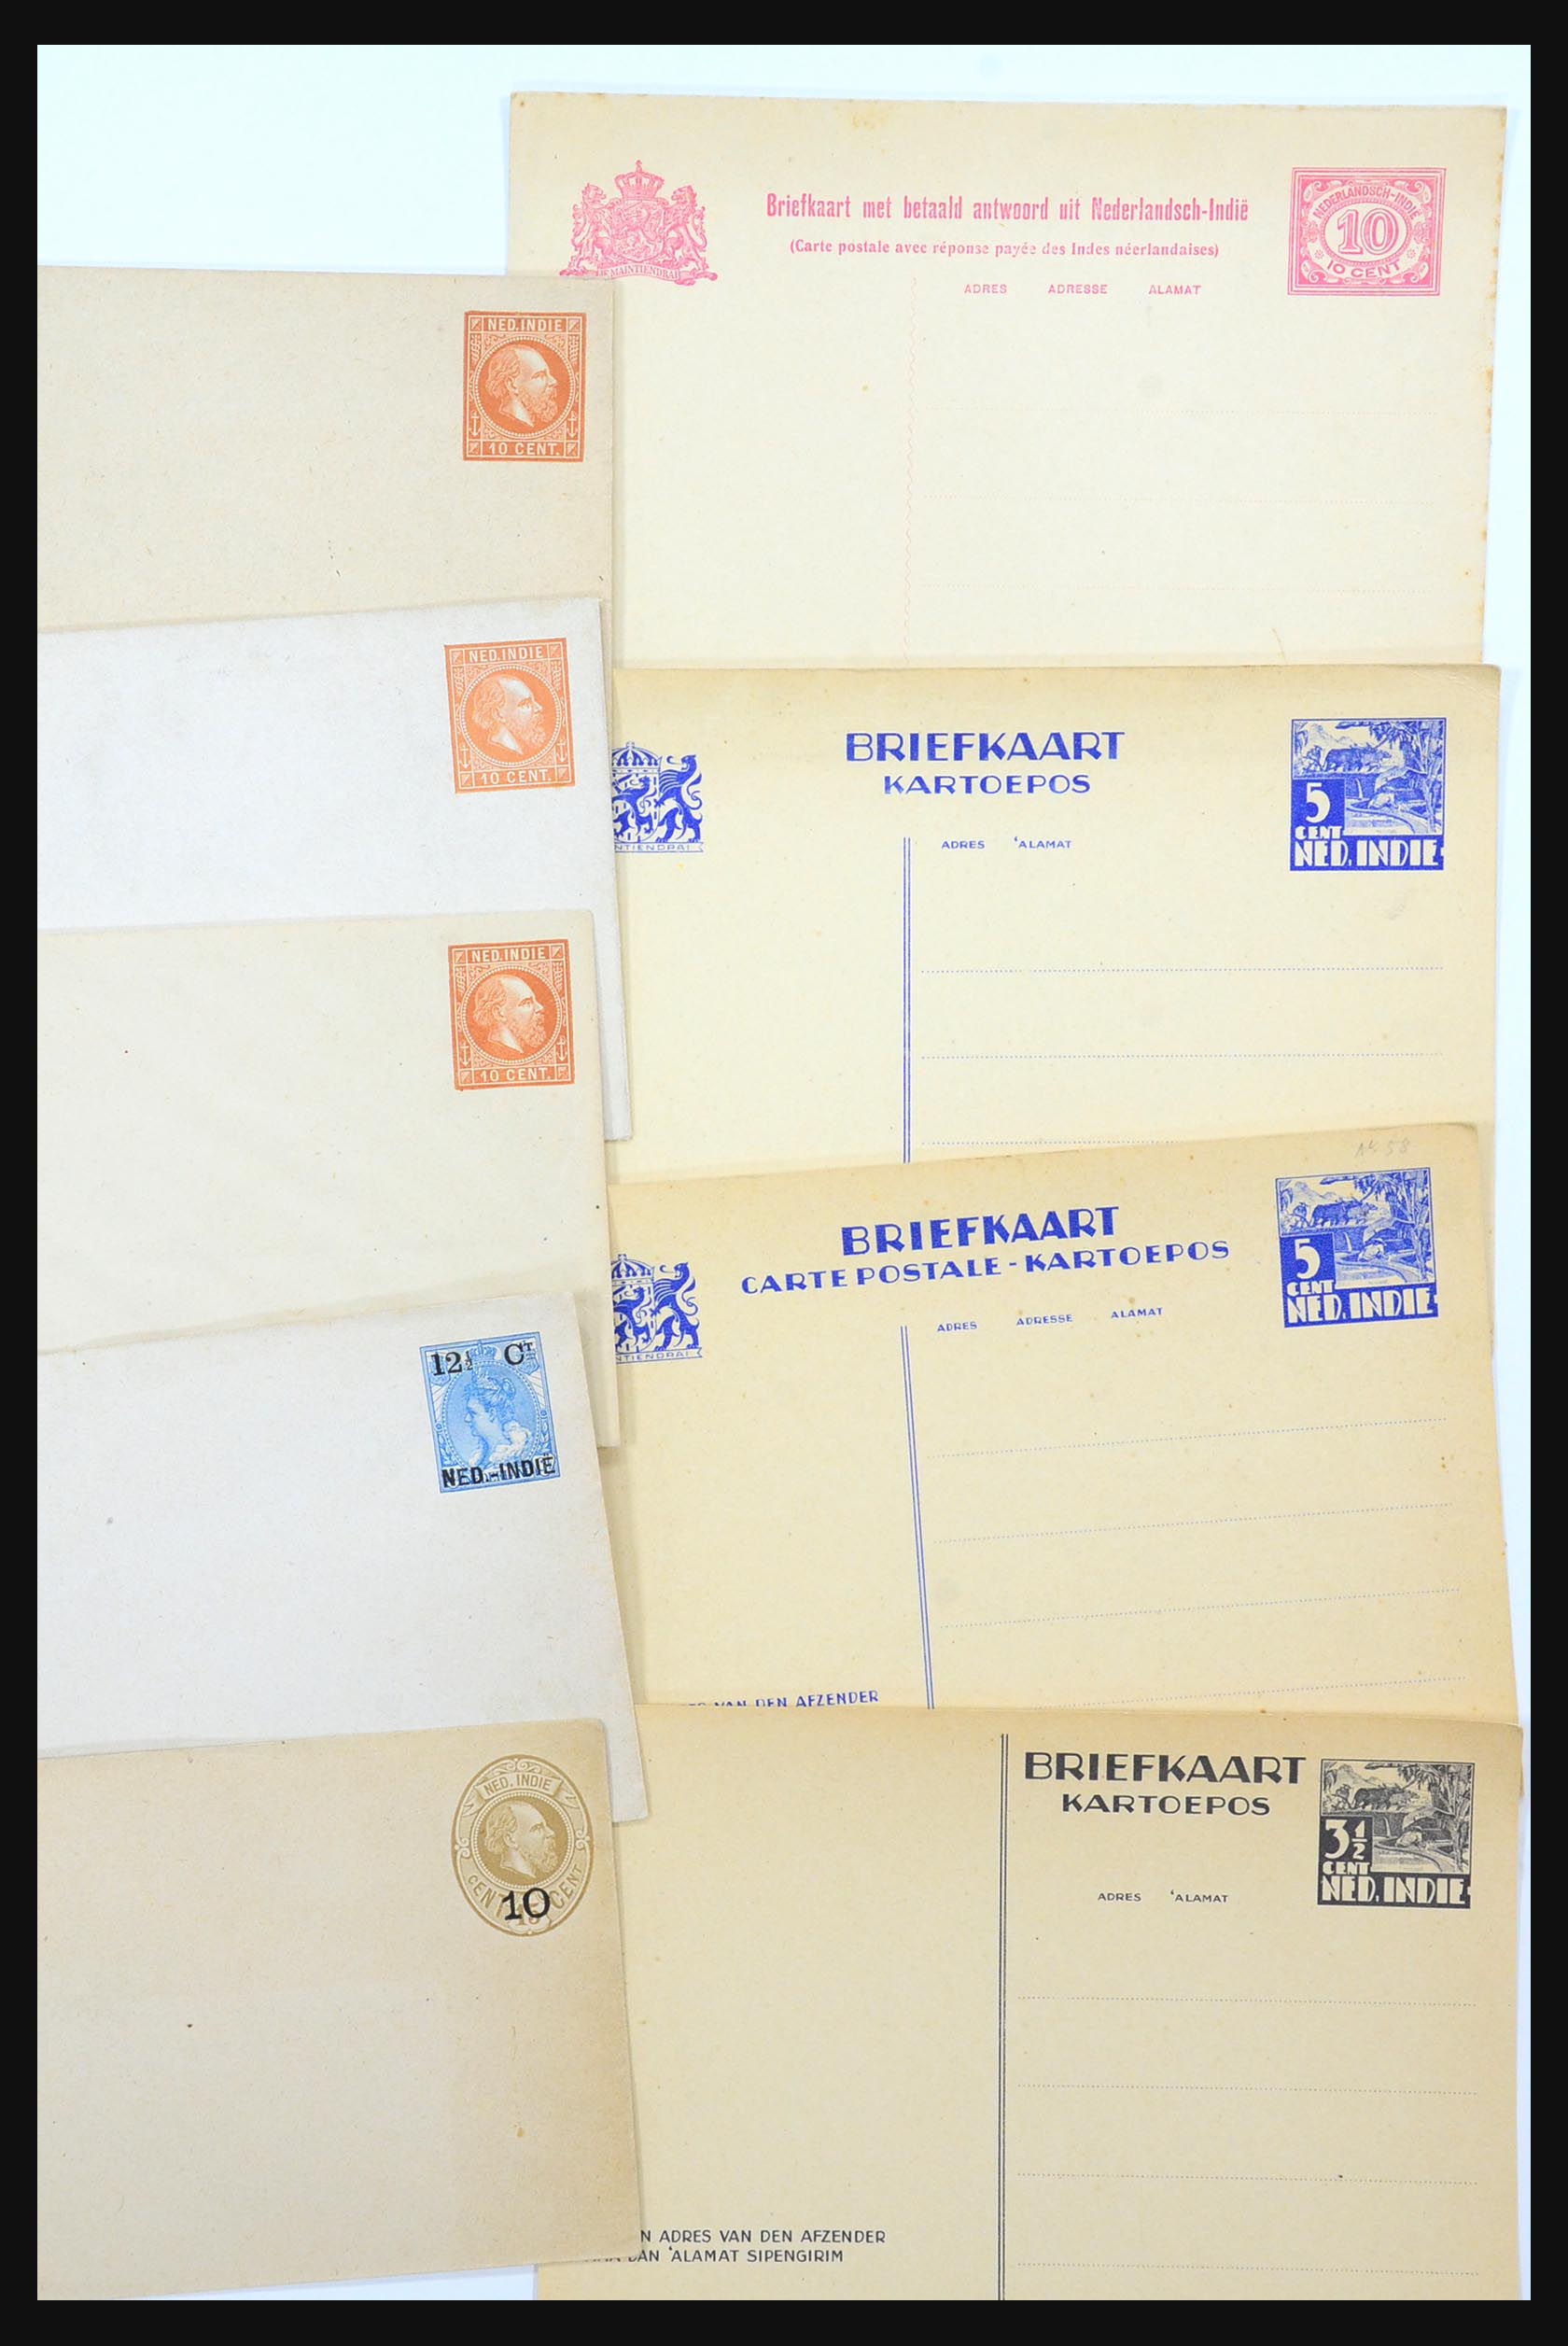 31361 028 - 31361 Nederlands Indië brieven 1880-1950.